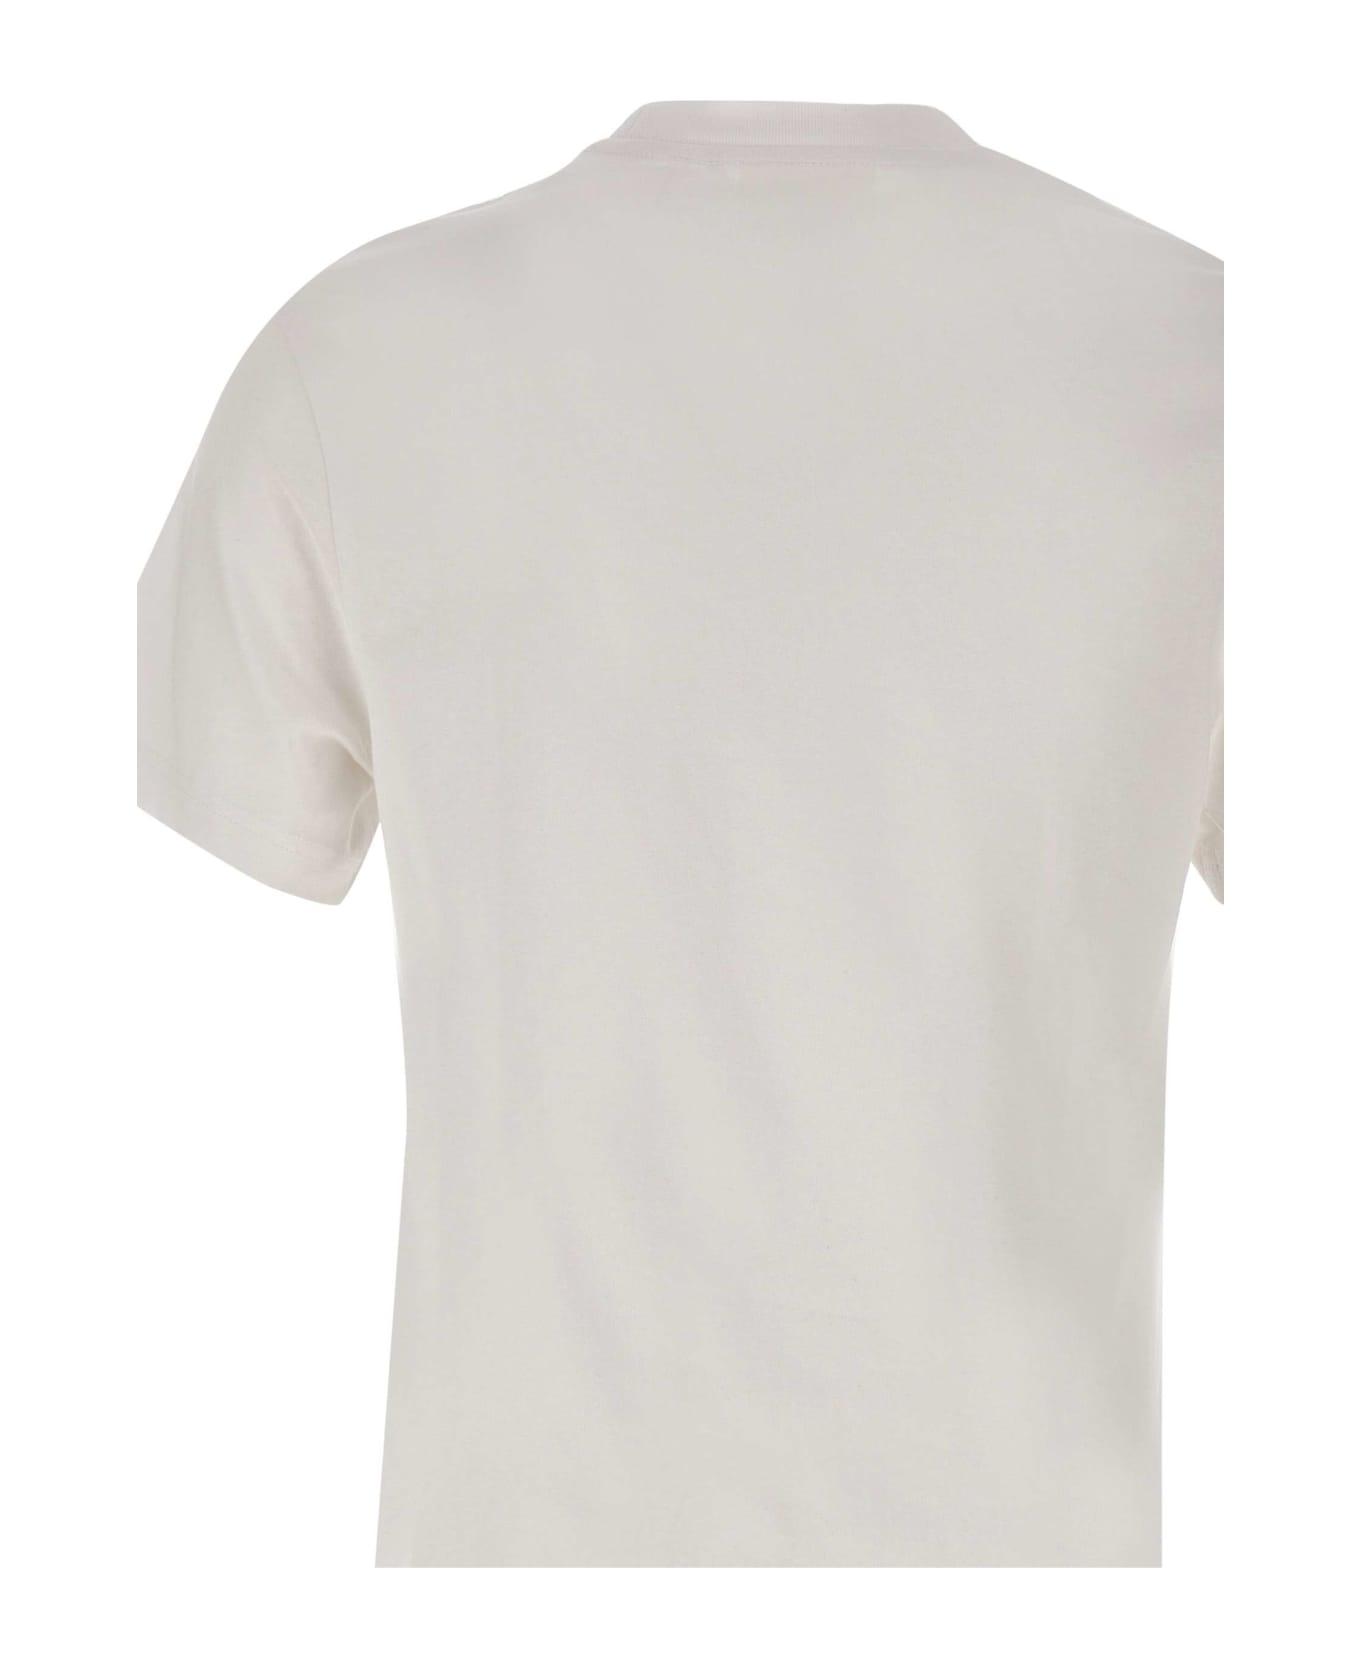 Axel Arigato "legacy" Cotton T-shirt - WHITE